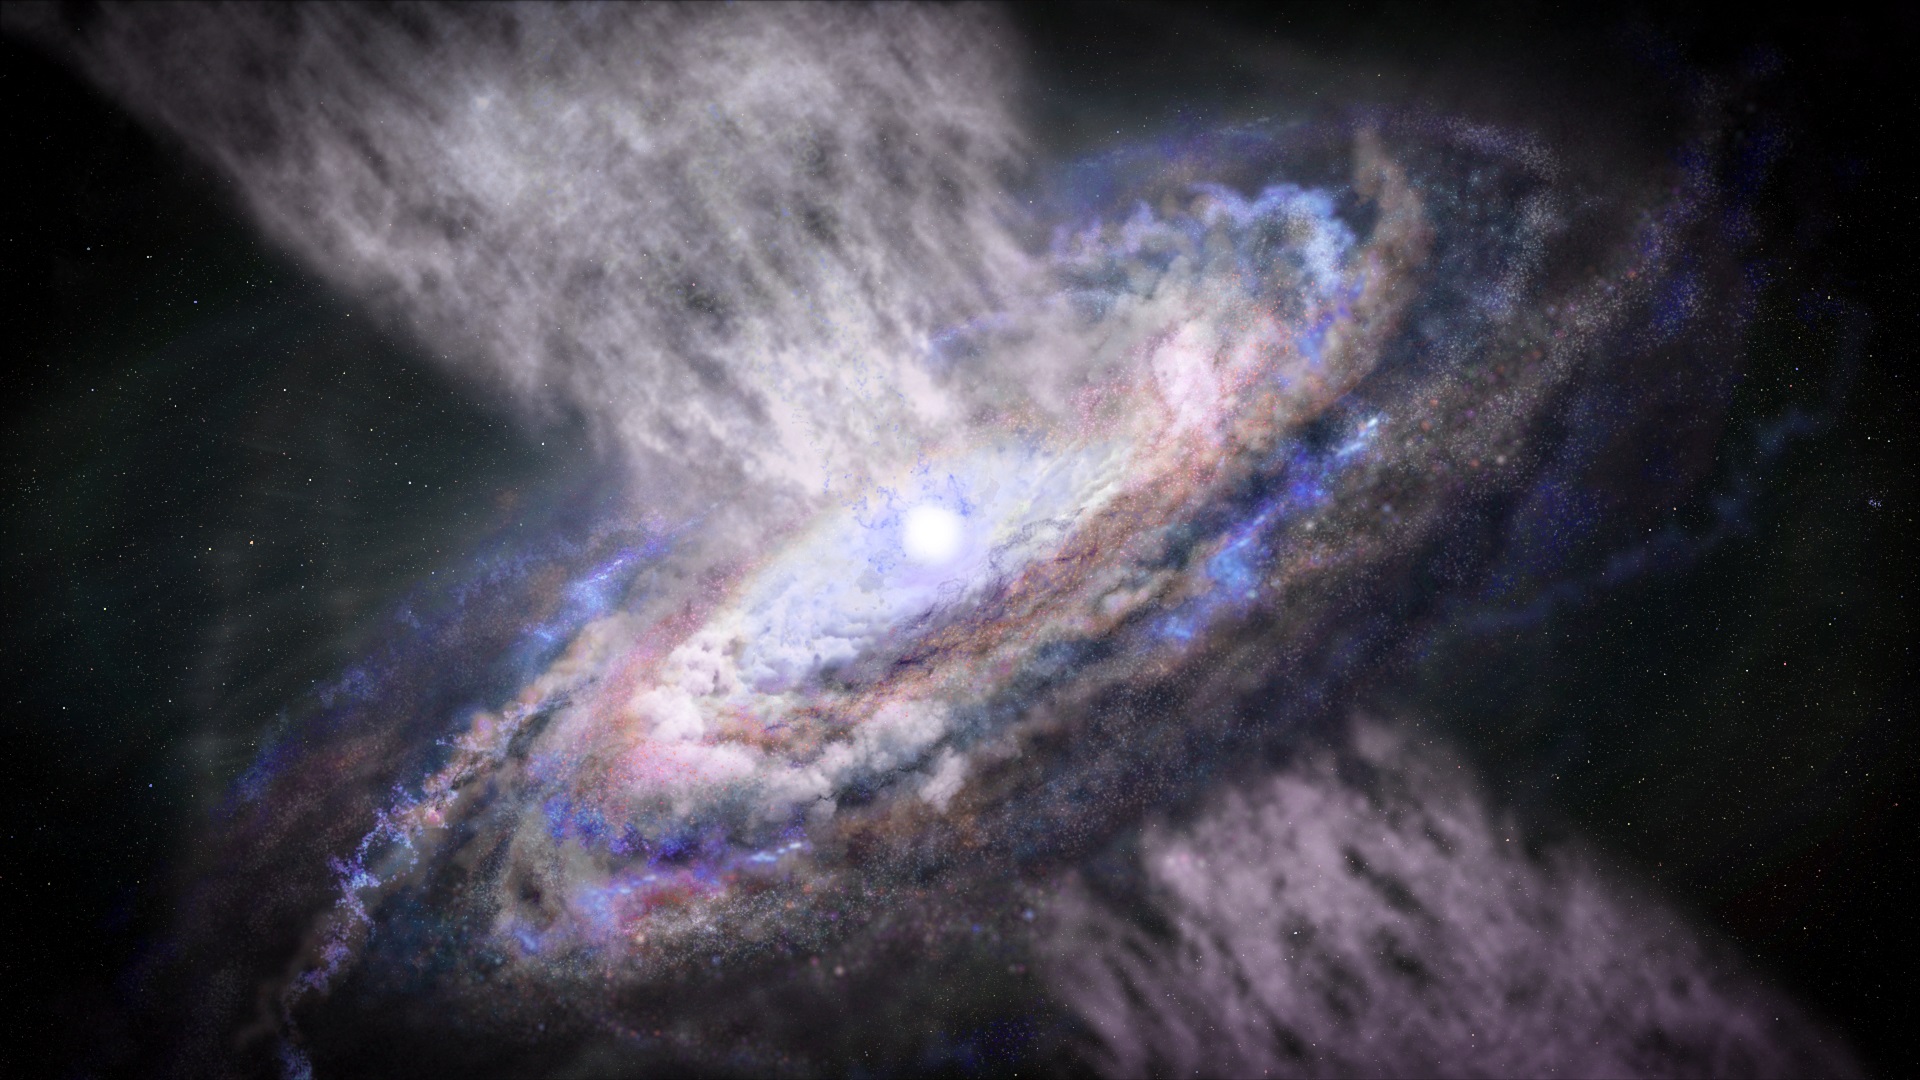 Scoperti raggi gamma prodotti nei poderosi venti emessi dai buchi neri:  nuovi indizi per conoscere la storia evolutiva delle galassie, compresa la nostra